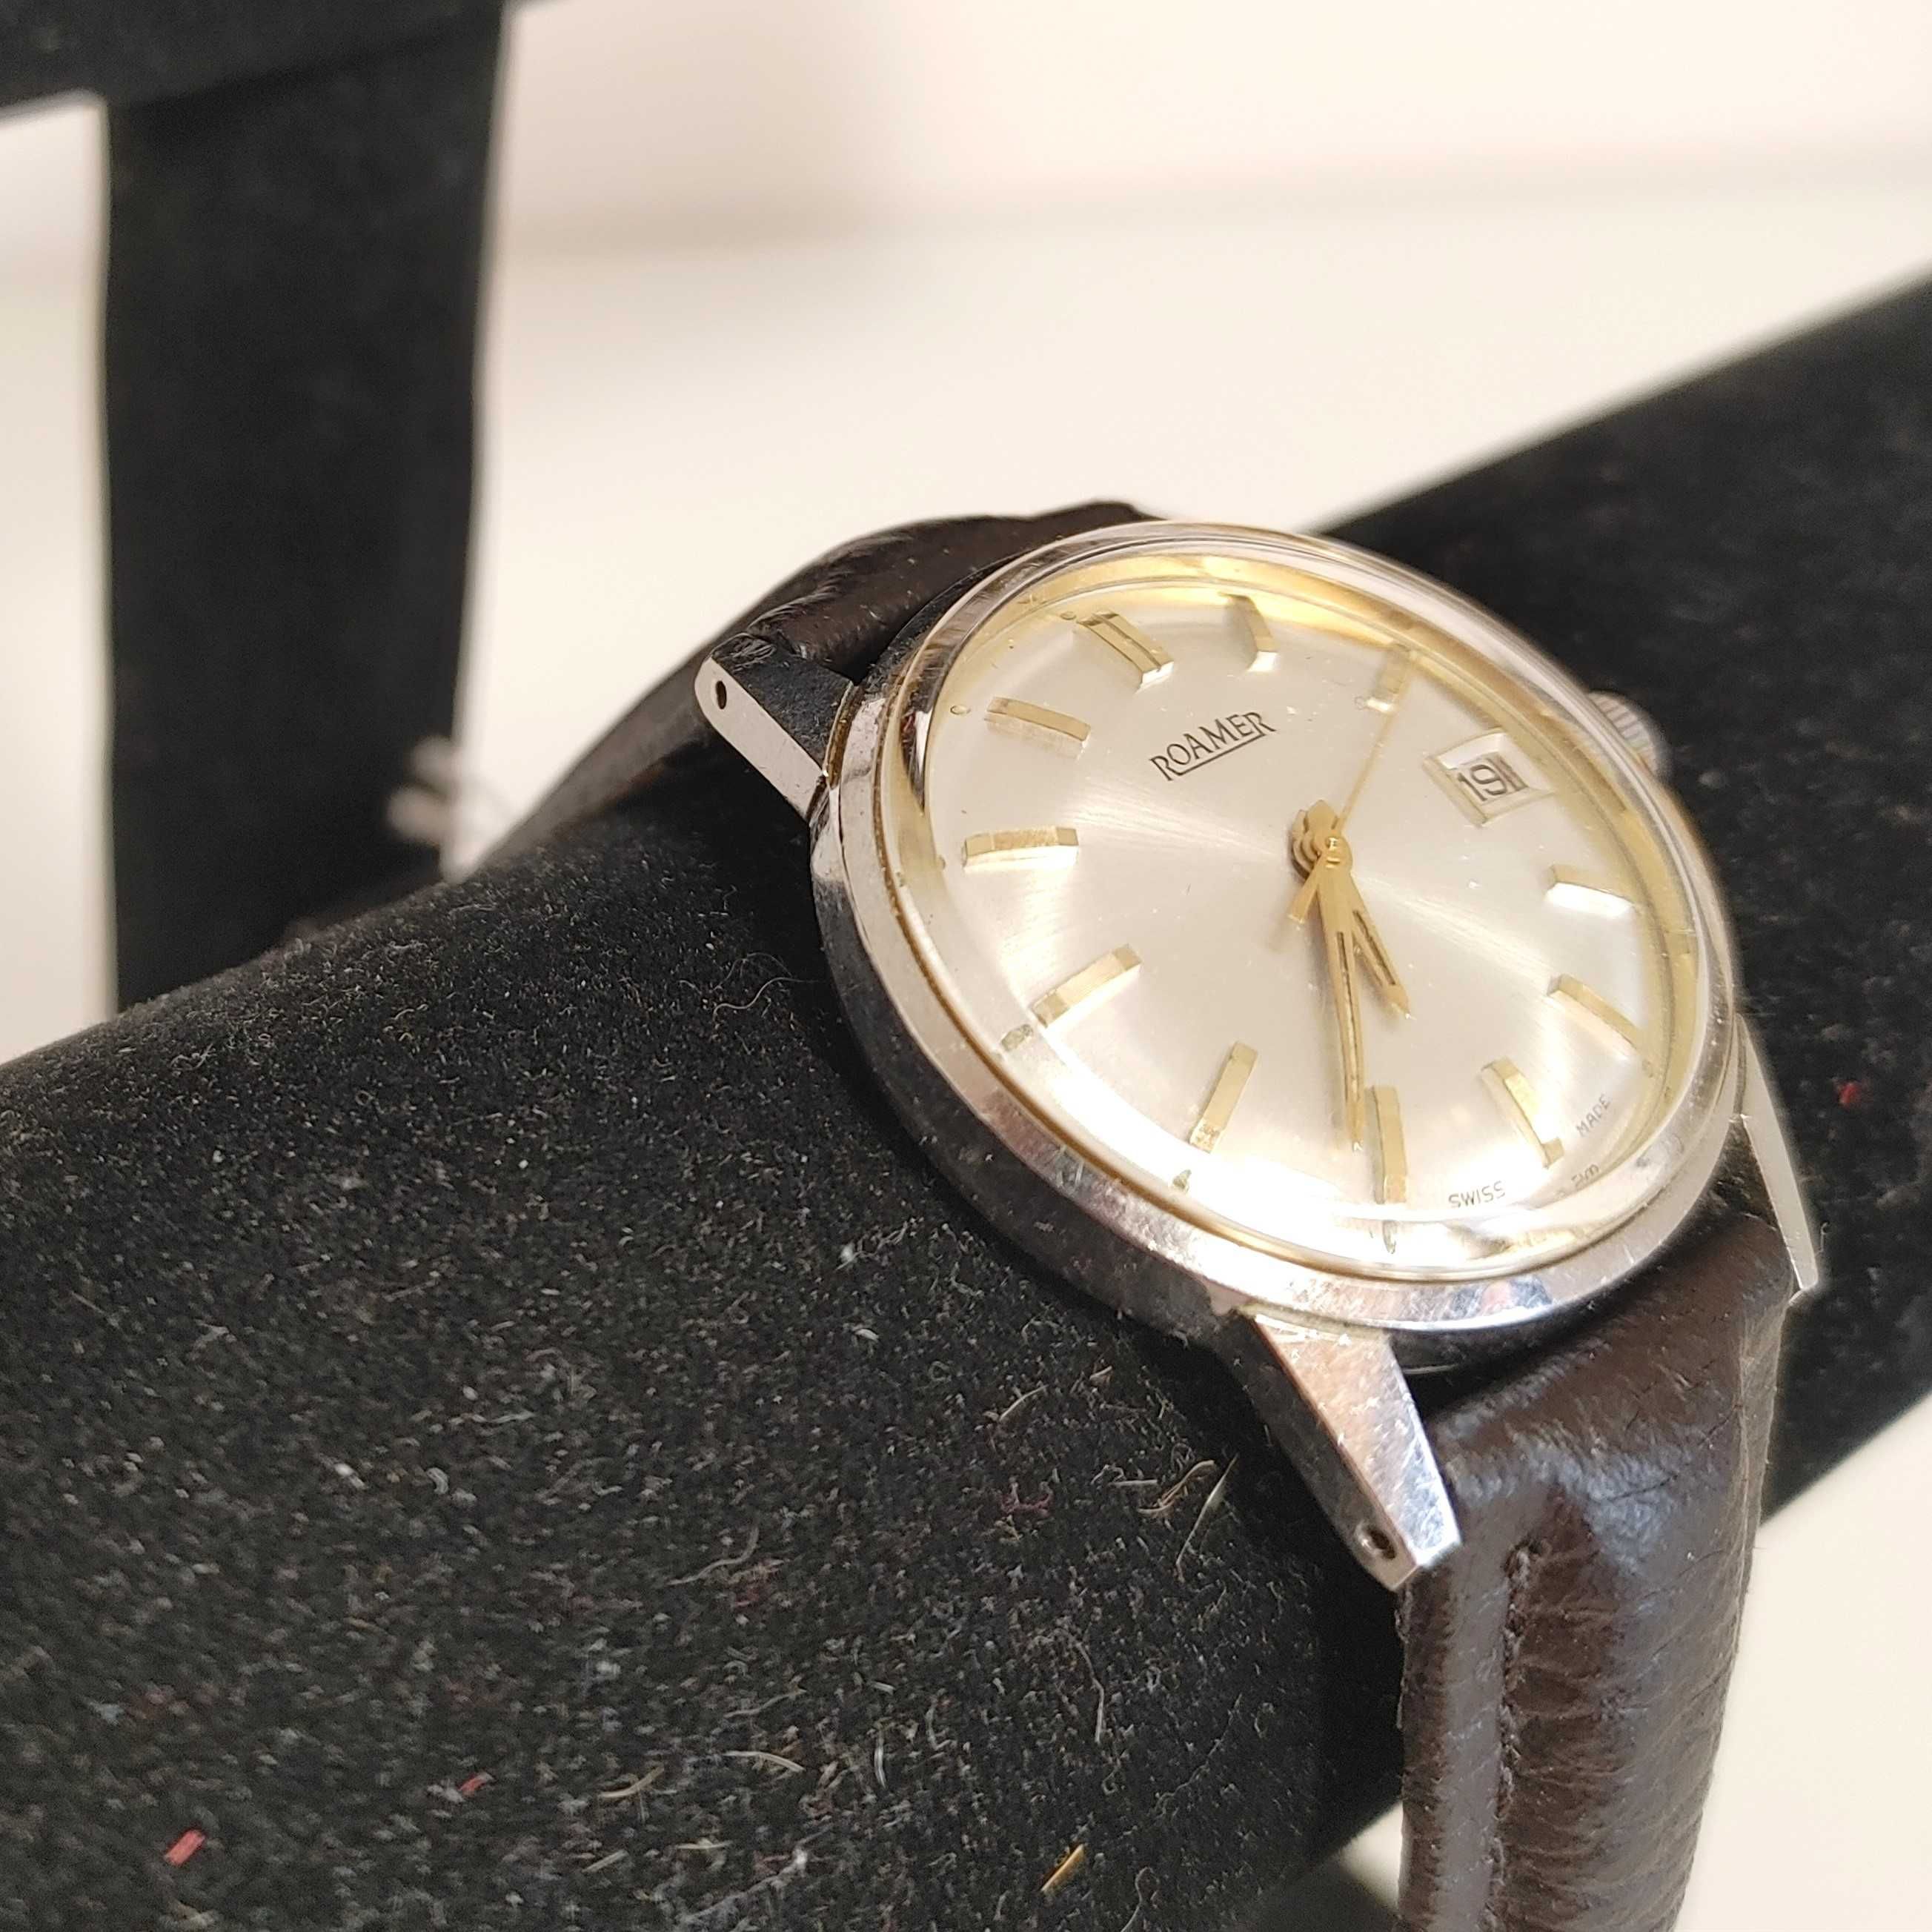 Piękny Zegarek naręczny renomowanej firmy ROAMER lata 70 te XX wieku